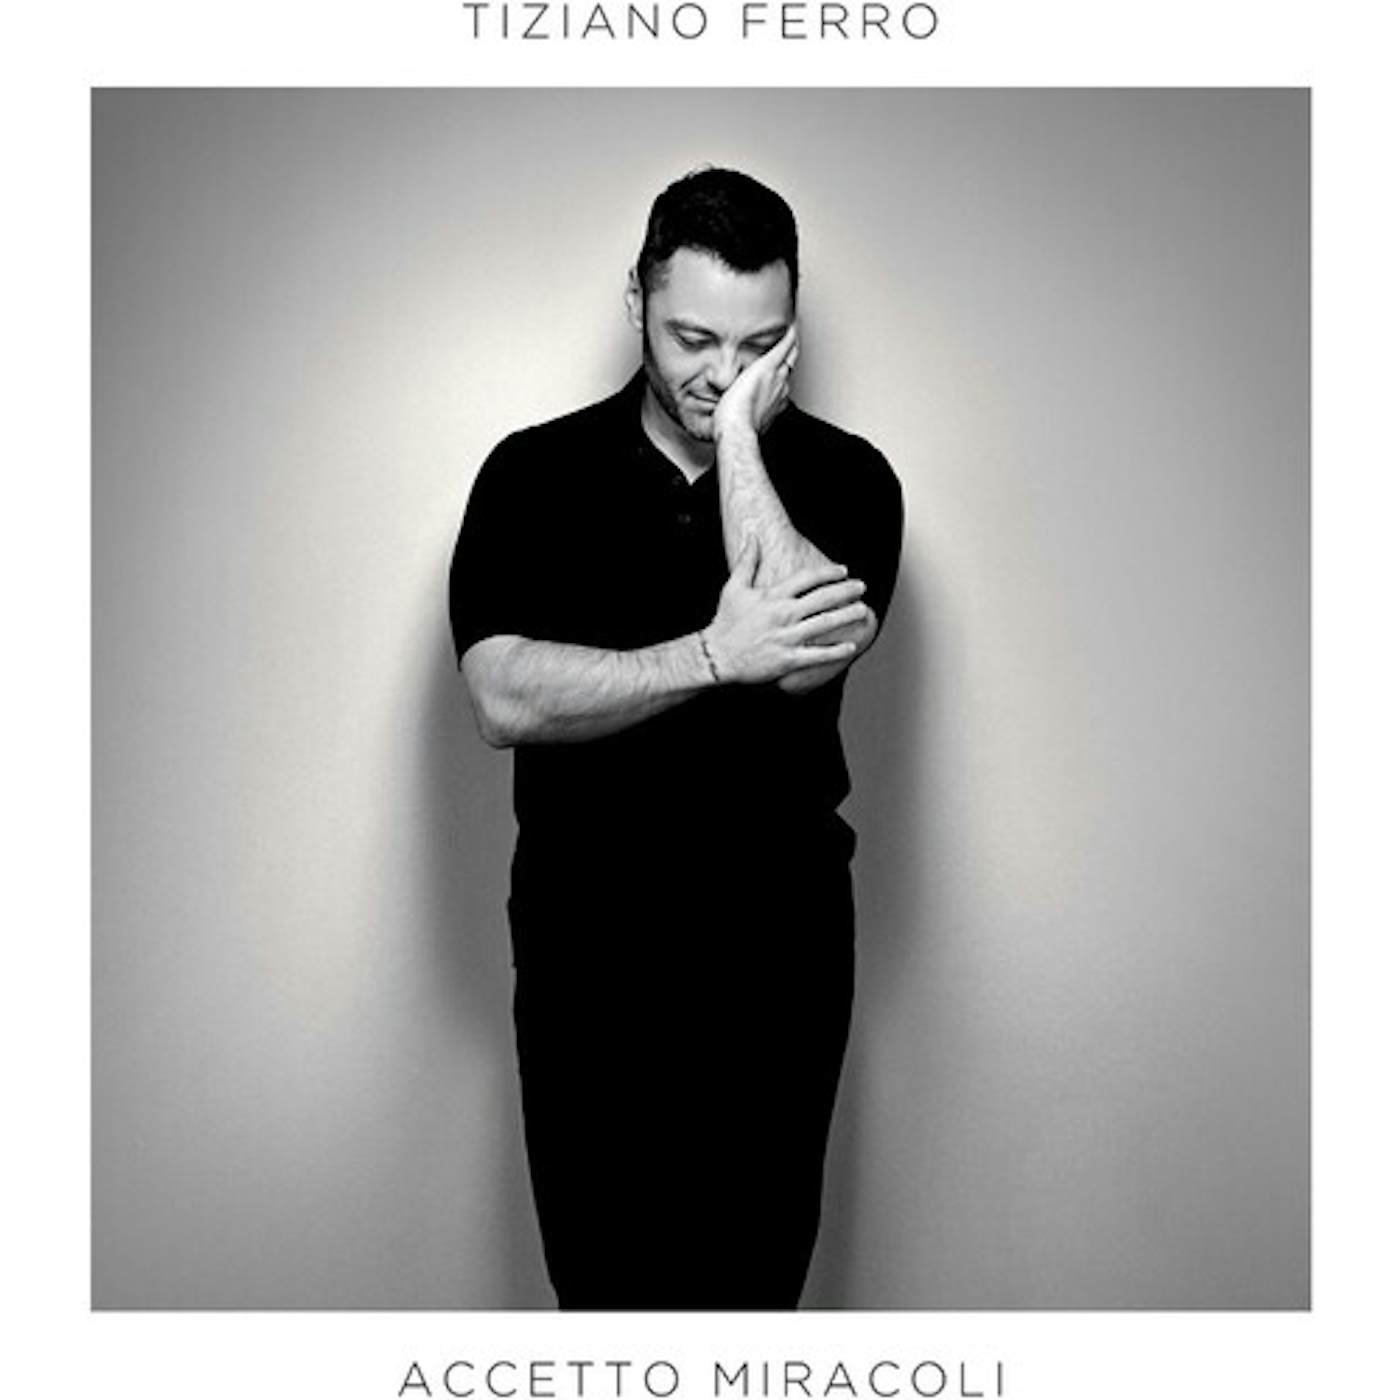 Tiziano Ferro Accetto Miracoli Vinyl Record